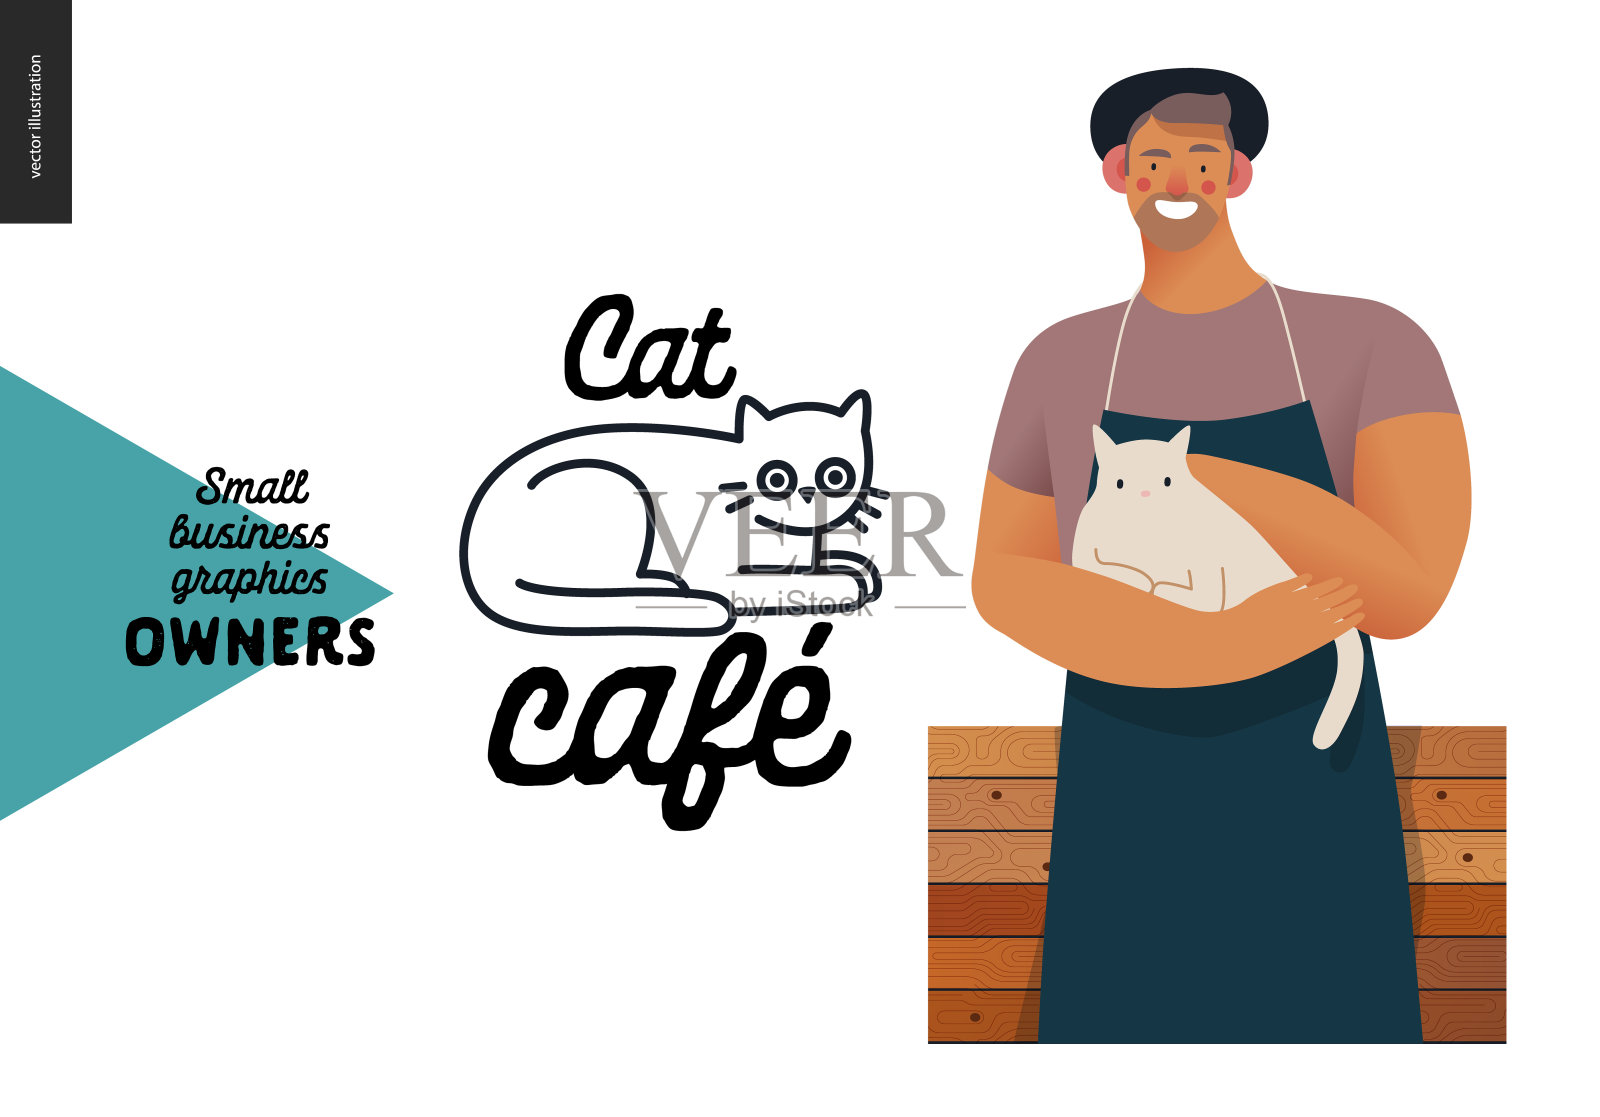 业主-小型商业图形-猫咖啡馆插画图片素材